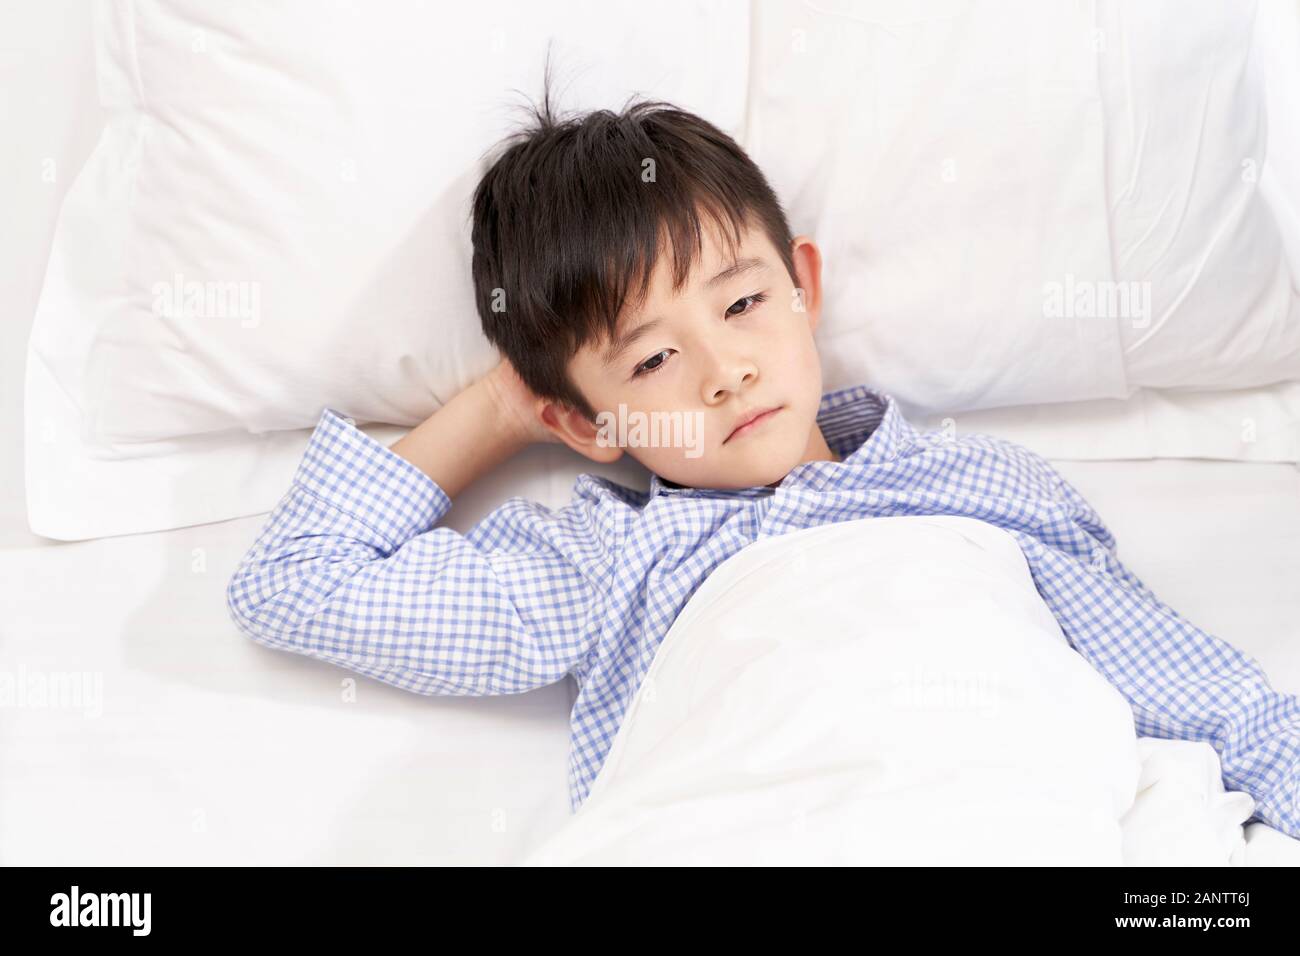 Fünf Jahre altes Kind im Bett liegt im Krankenhaus suchen traurig und deprimiert Stockfoto